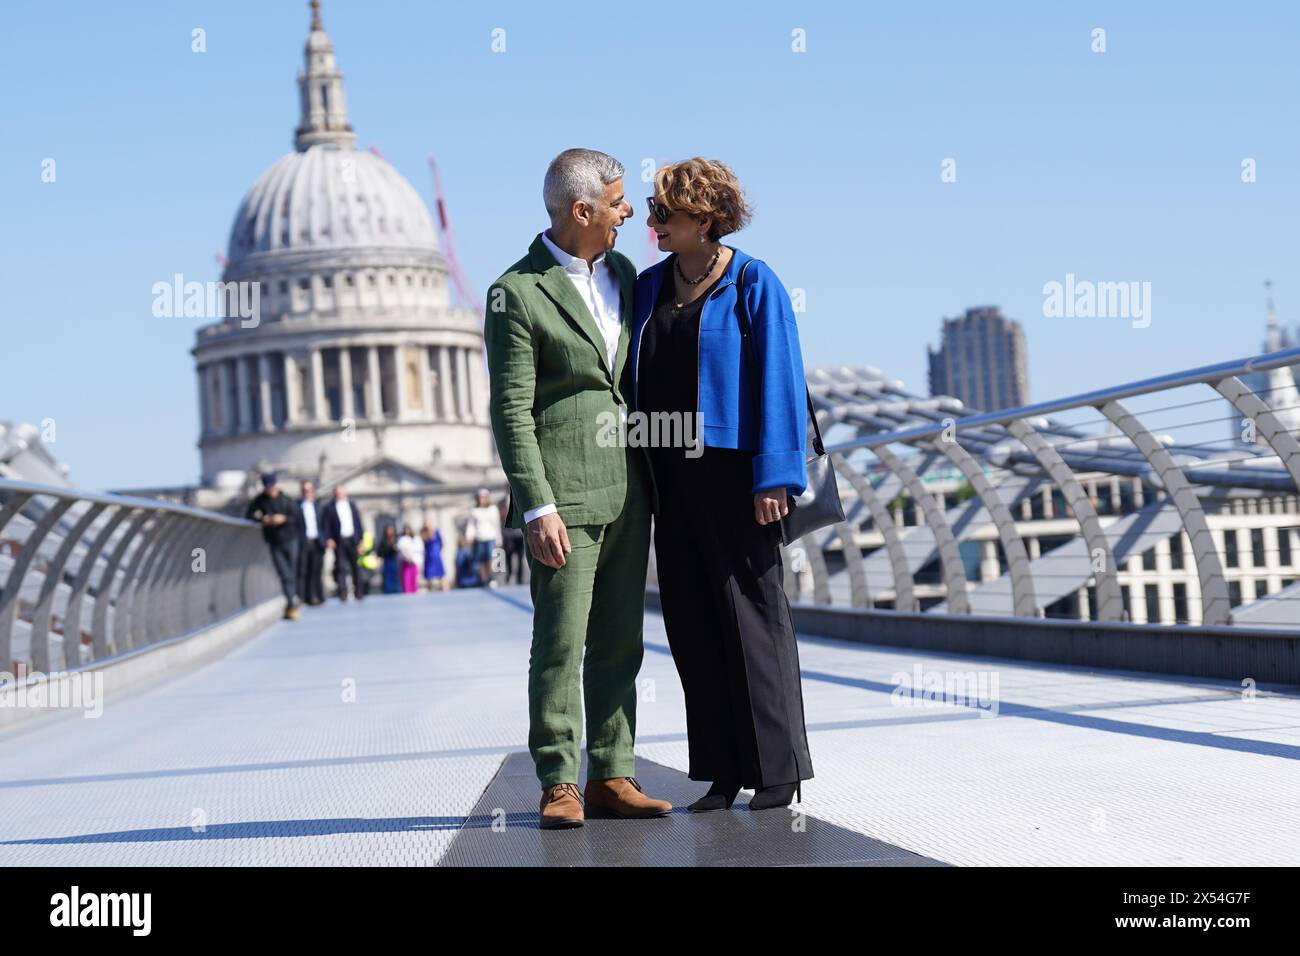 Sadiq Khan und seine Frau Saadiya Khan posieren für Fotografen auf der Millennium Bridge, während sie zur Tate Modern in London aufbrechen, wo er die Erklärung der Anerkennung des Amtes unterzeichnen wird, um seine dritte Amtszeit als Bürgermeister von London zu beginnen. Bilddatum: Dienstag, 7. Mai 2024. Stockfoto